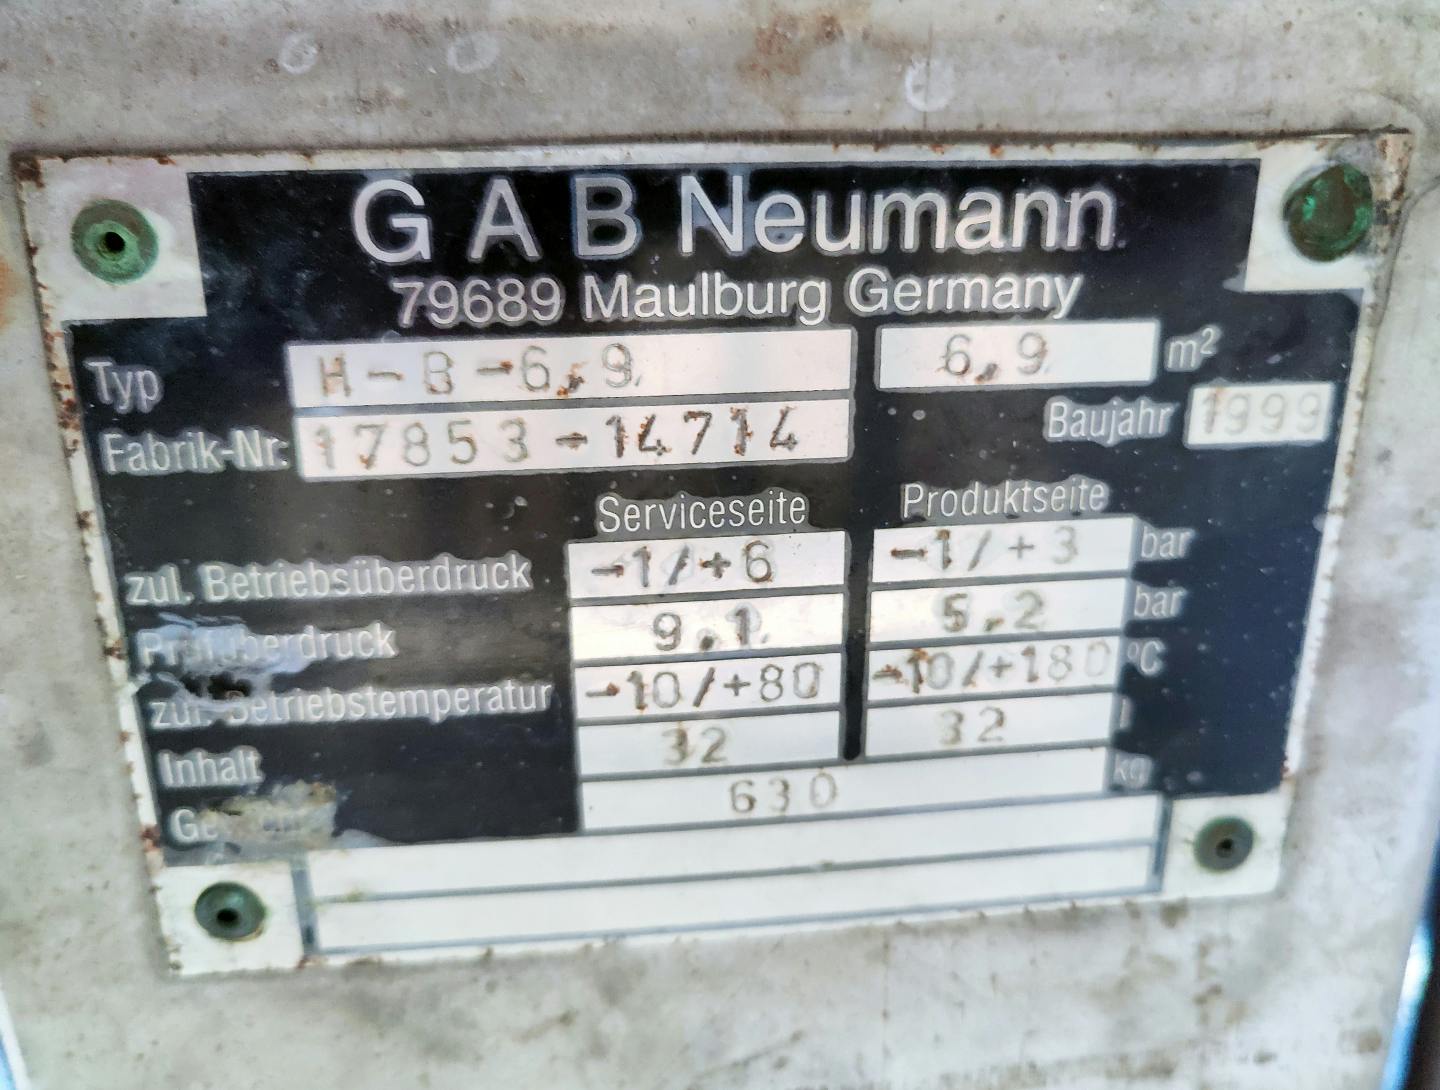 Gab Neumann H-B- 6,9 - Mantel- en buiswarmtewisselaar - image 7